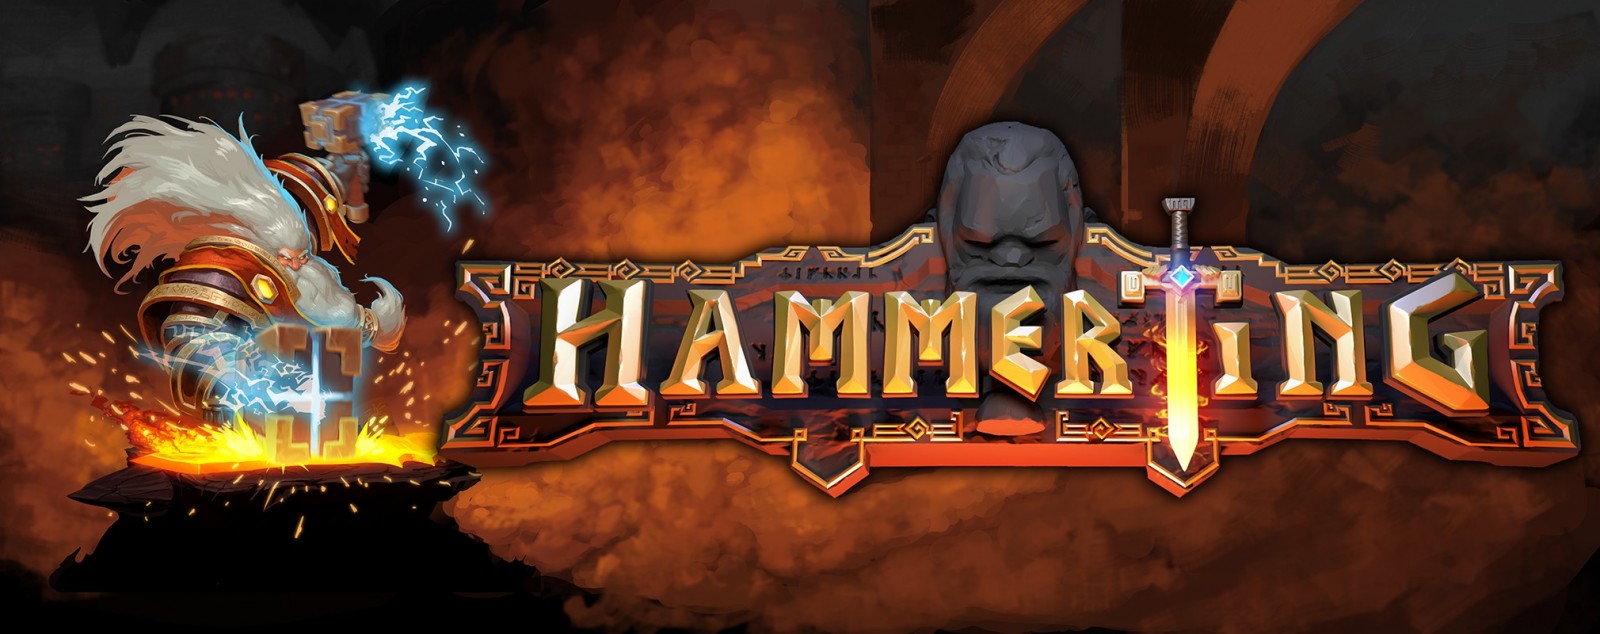 Hammerting el simulador de minería de enanos llegará a Steam